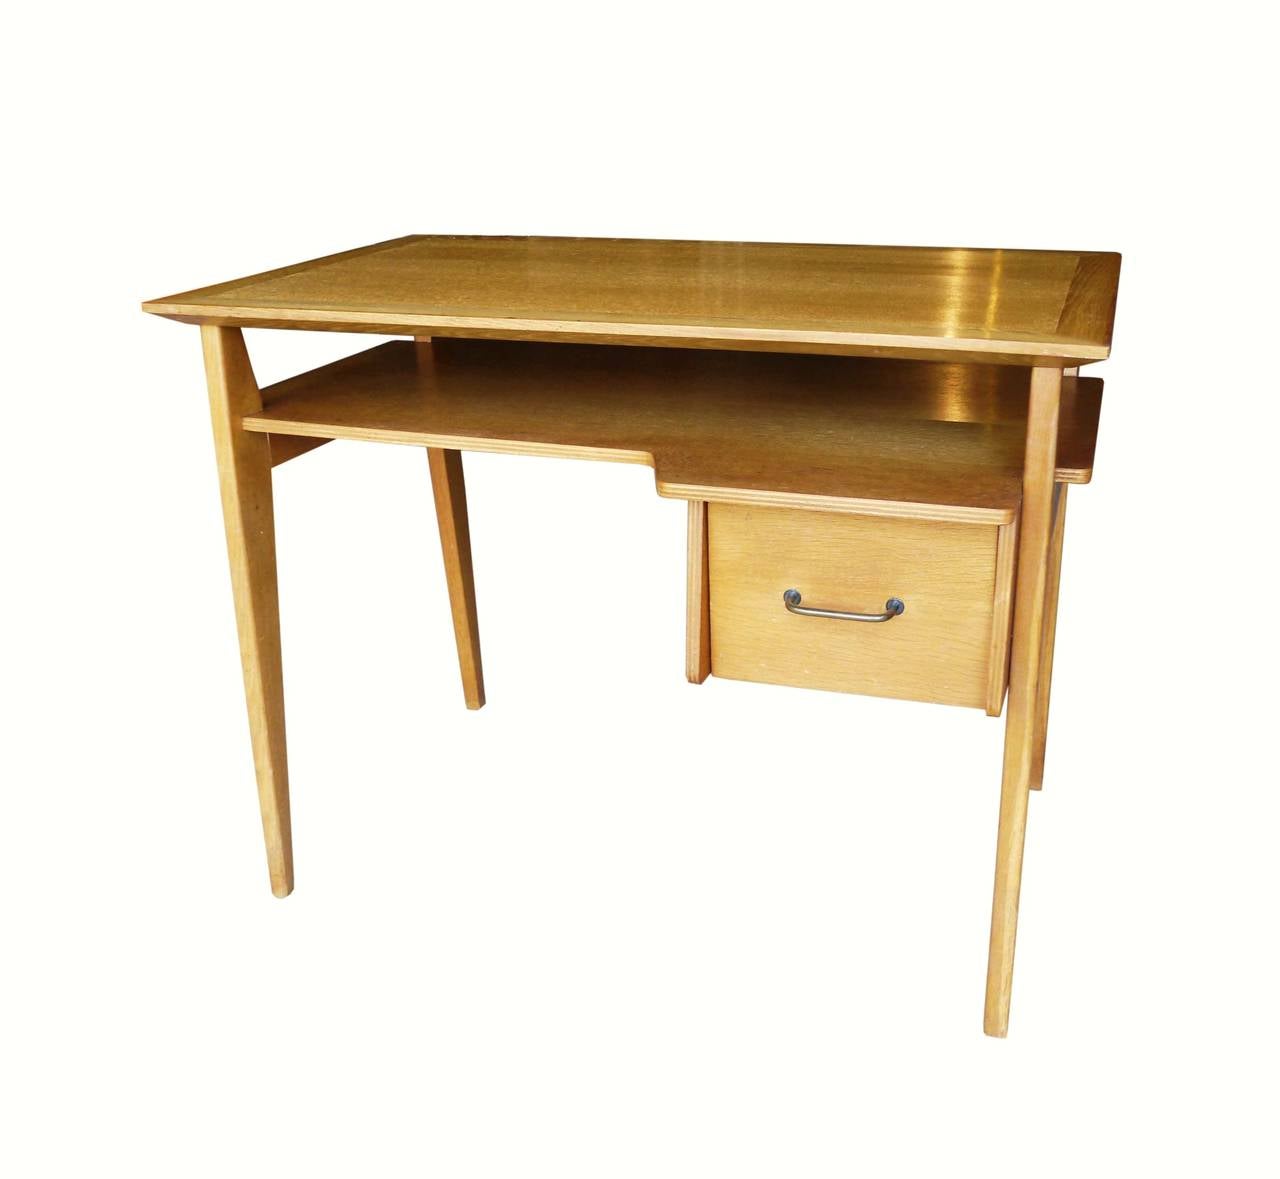 French reconstruction oak desk by Roger Landault for Meubles ABC Editor in 1954. L 100cms ; L. 62 cms ; H. 76.5 cms.
Ref. "Les décorateurs des années 50" P. Favardin p. 121.